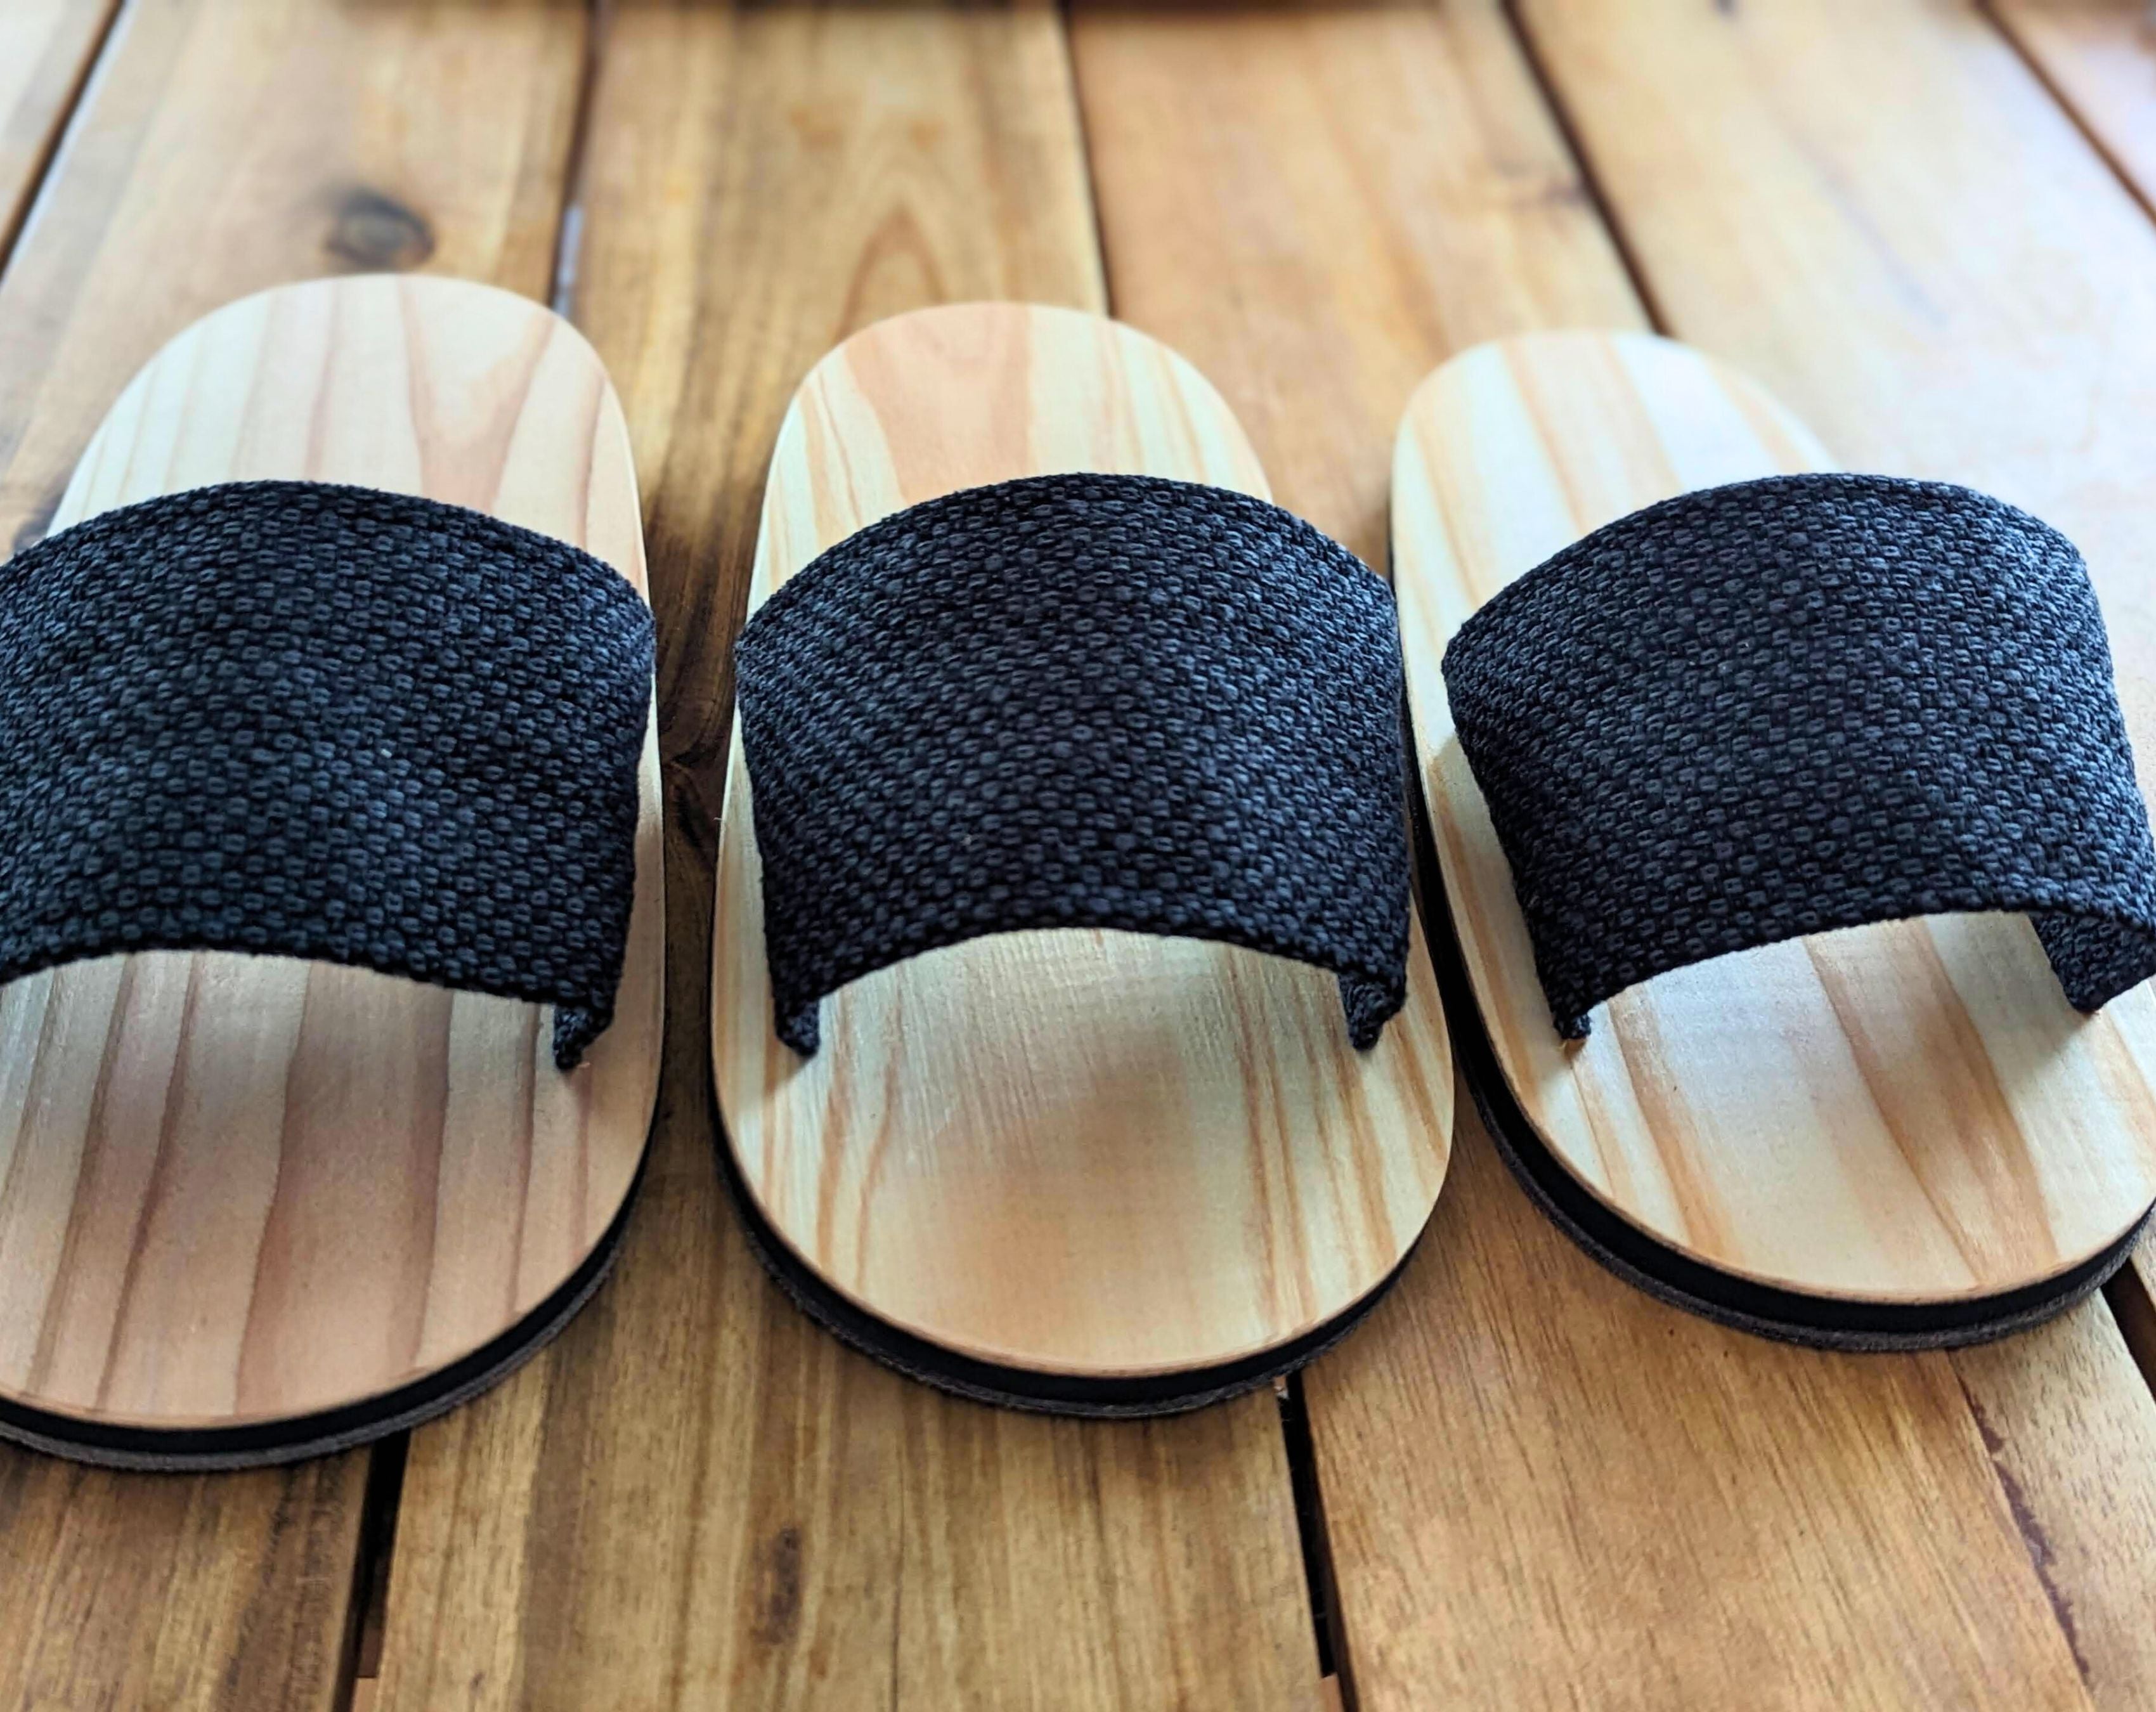 Holibanna Japanese Wooden Clogs Sandals Japan India | Ubuy